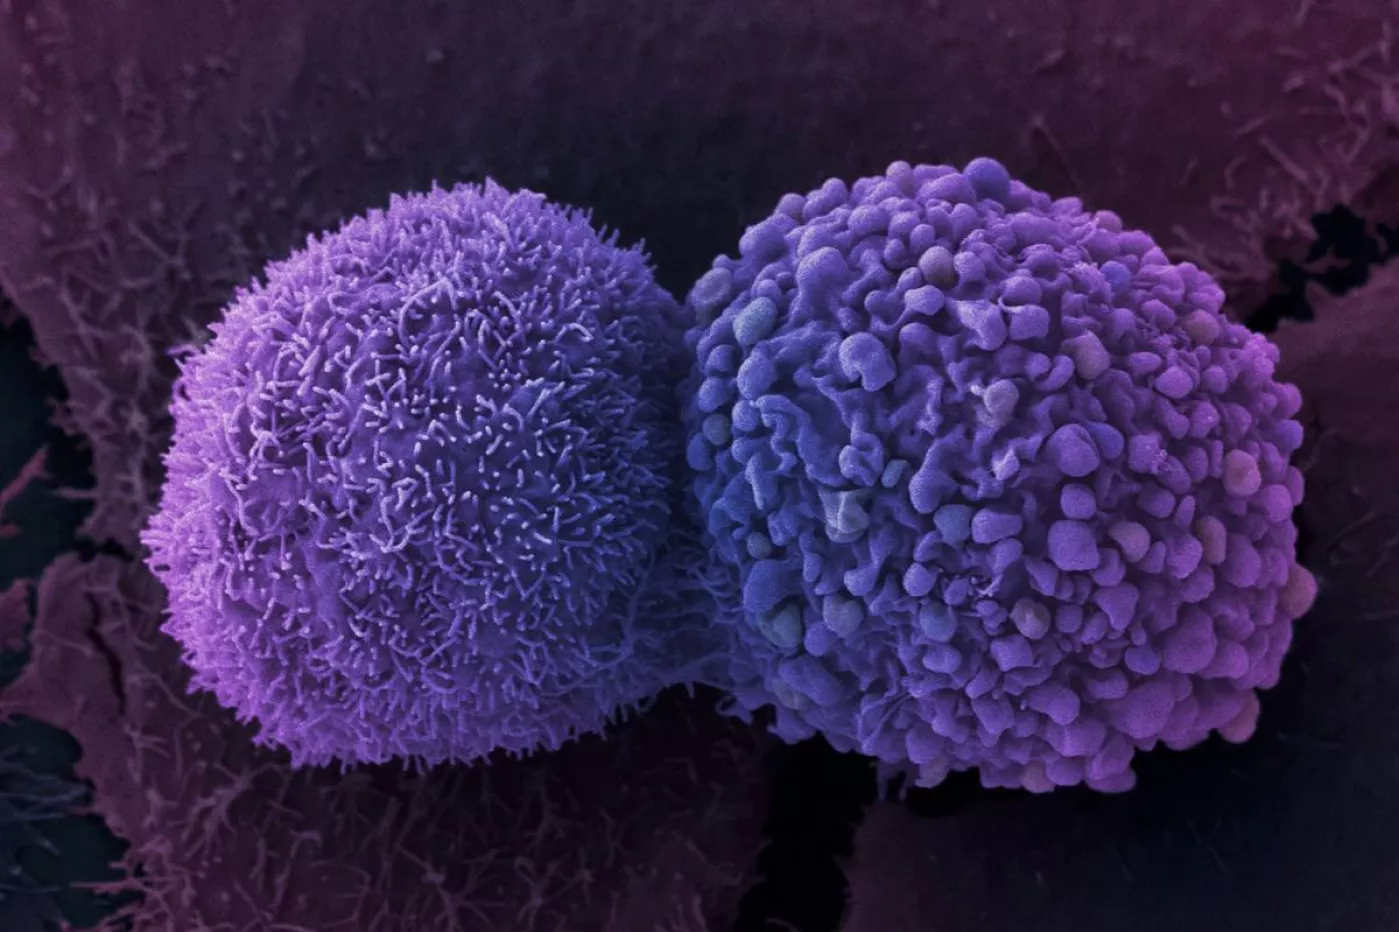 Células de cáncer de pulmón. Foto: ANNE WESTON/FRANCIS CRICK INSTITUTE